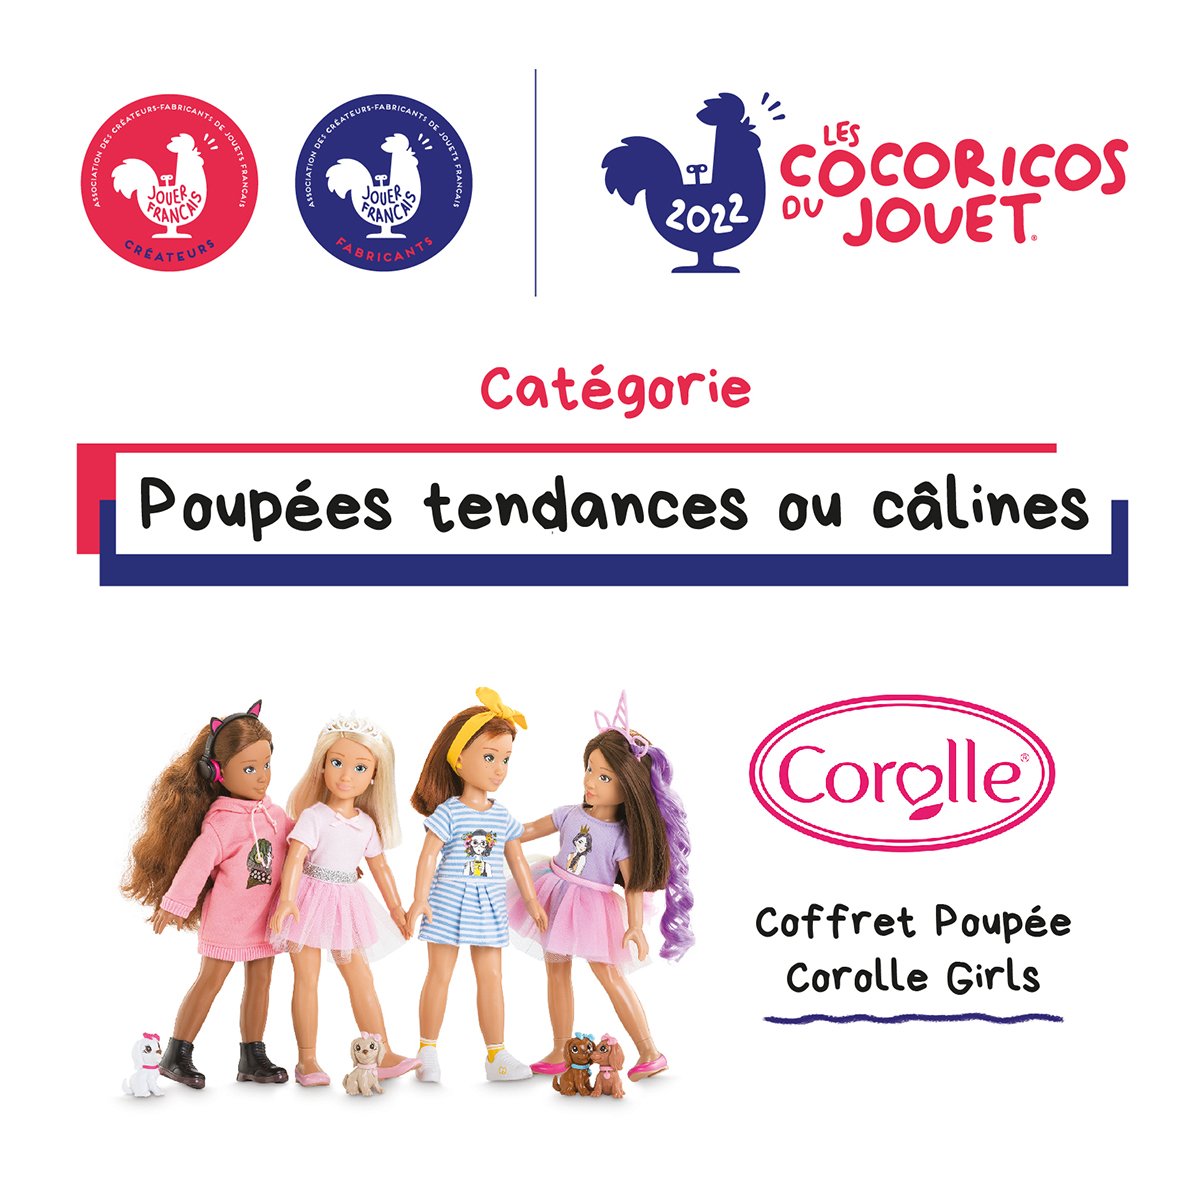 Coffret Poupée Corolle Girls Melody Plage - Corolle®